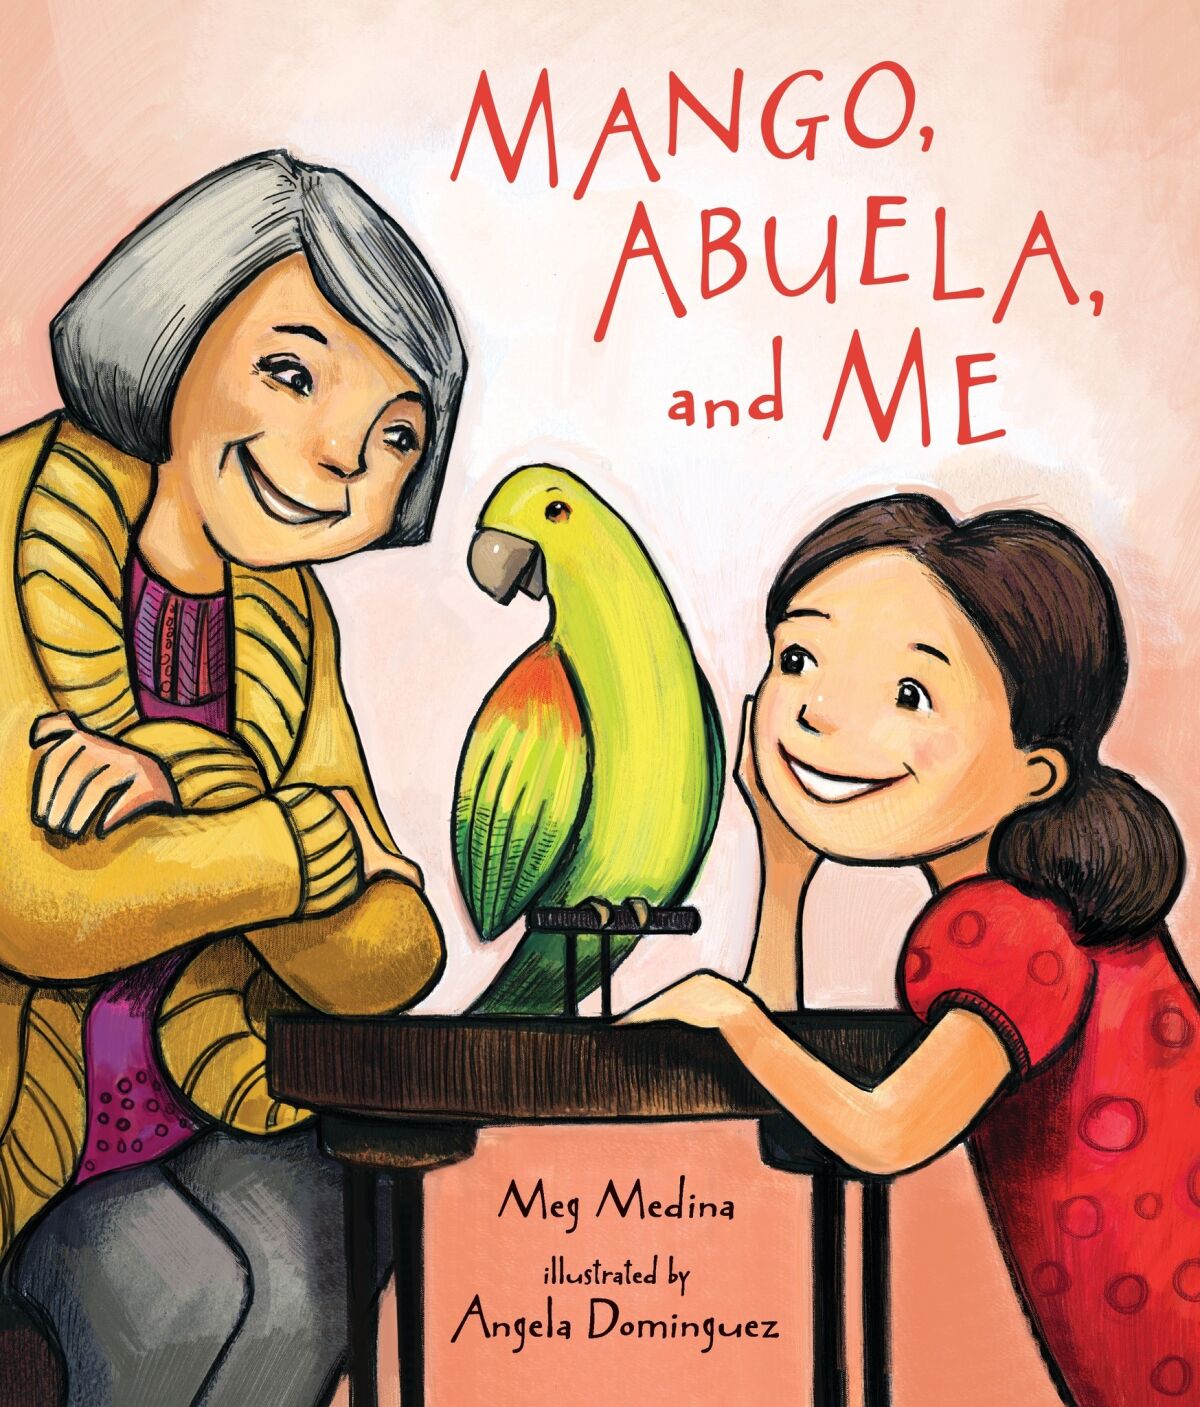 "Mango, Abuela, and Me" by Meg Medina, illustrated by Angela Dominguez